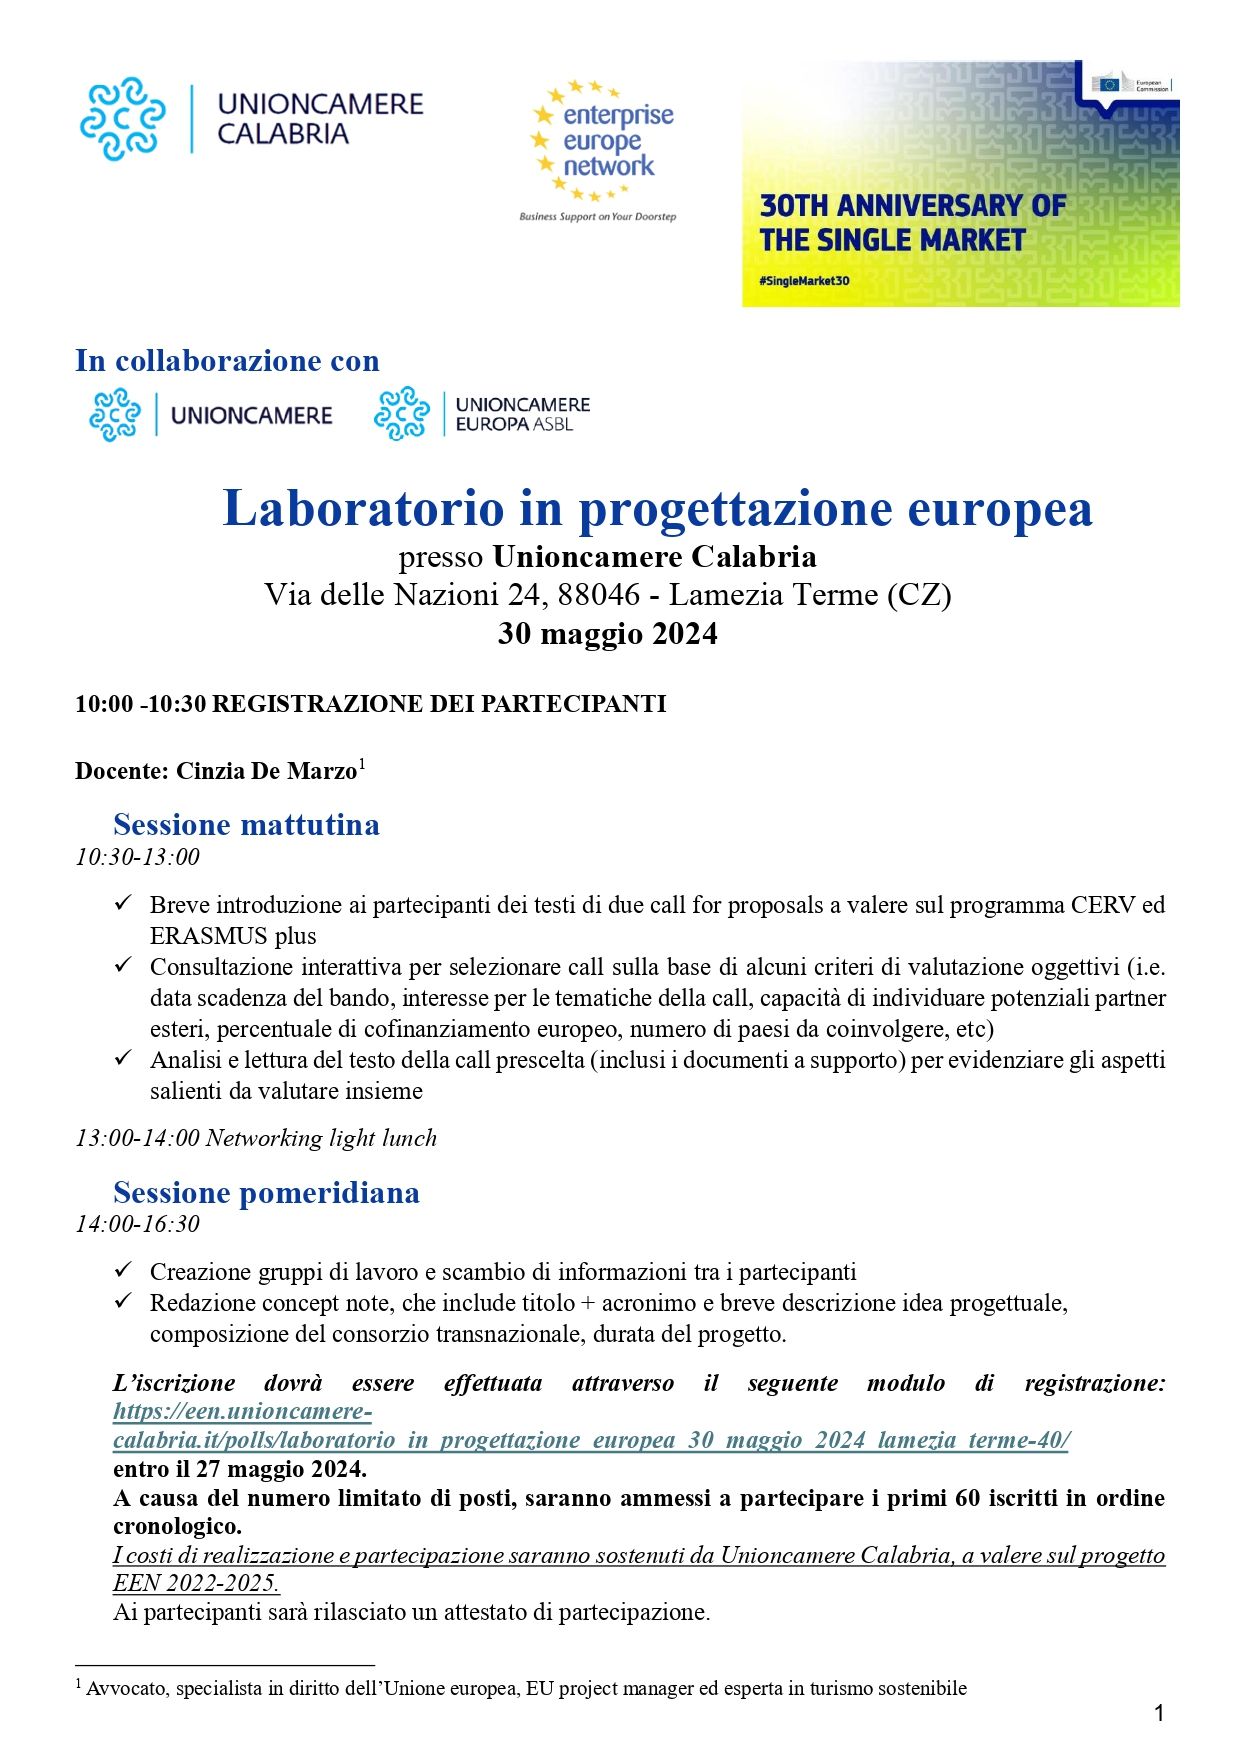 Laboratorio in progettazione europea -  30 maggio 2024 - Lamezia Terme